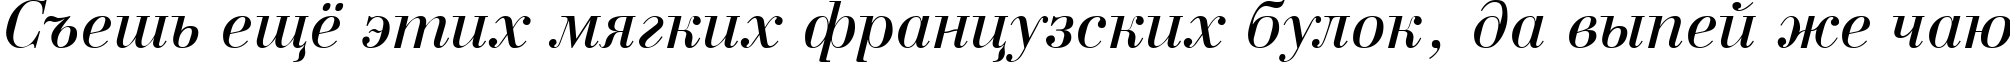 Пример написания шрифтом a_BodoniNova Italic текста на русском